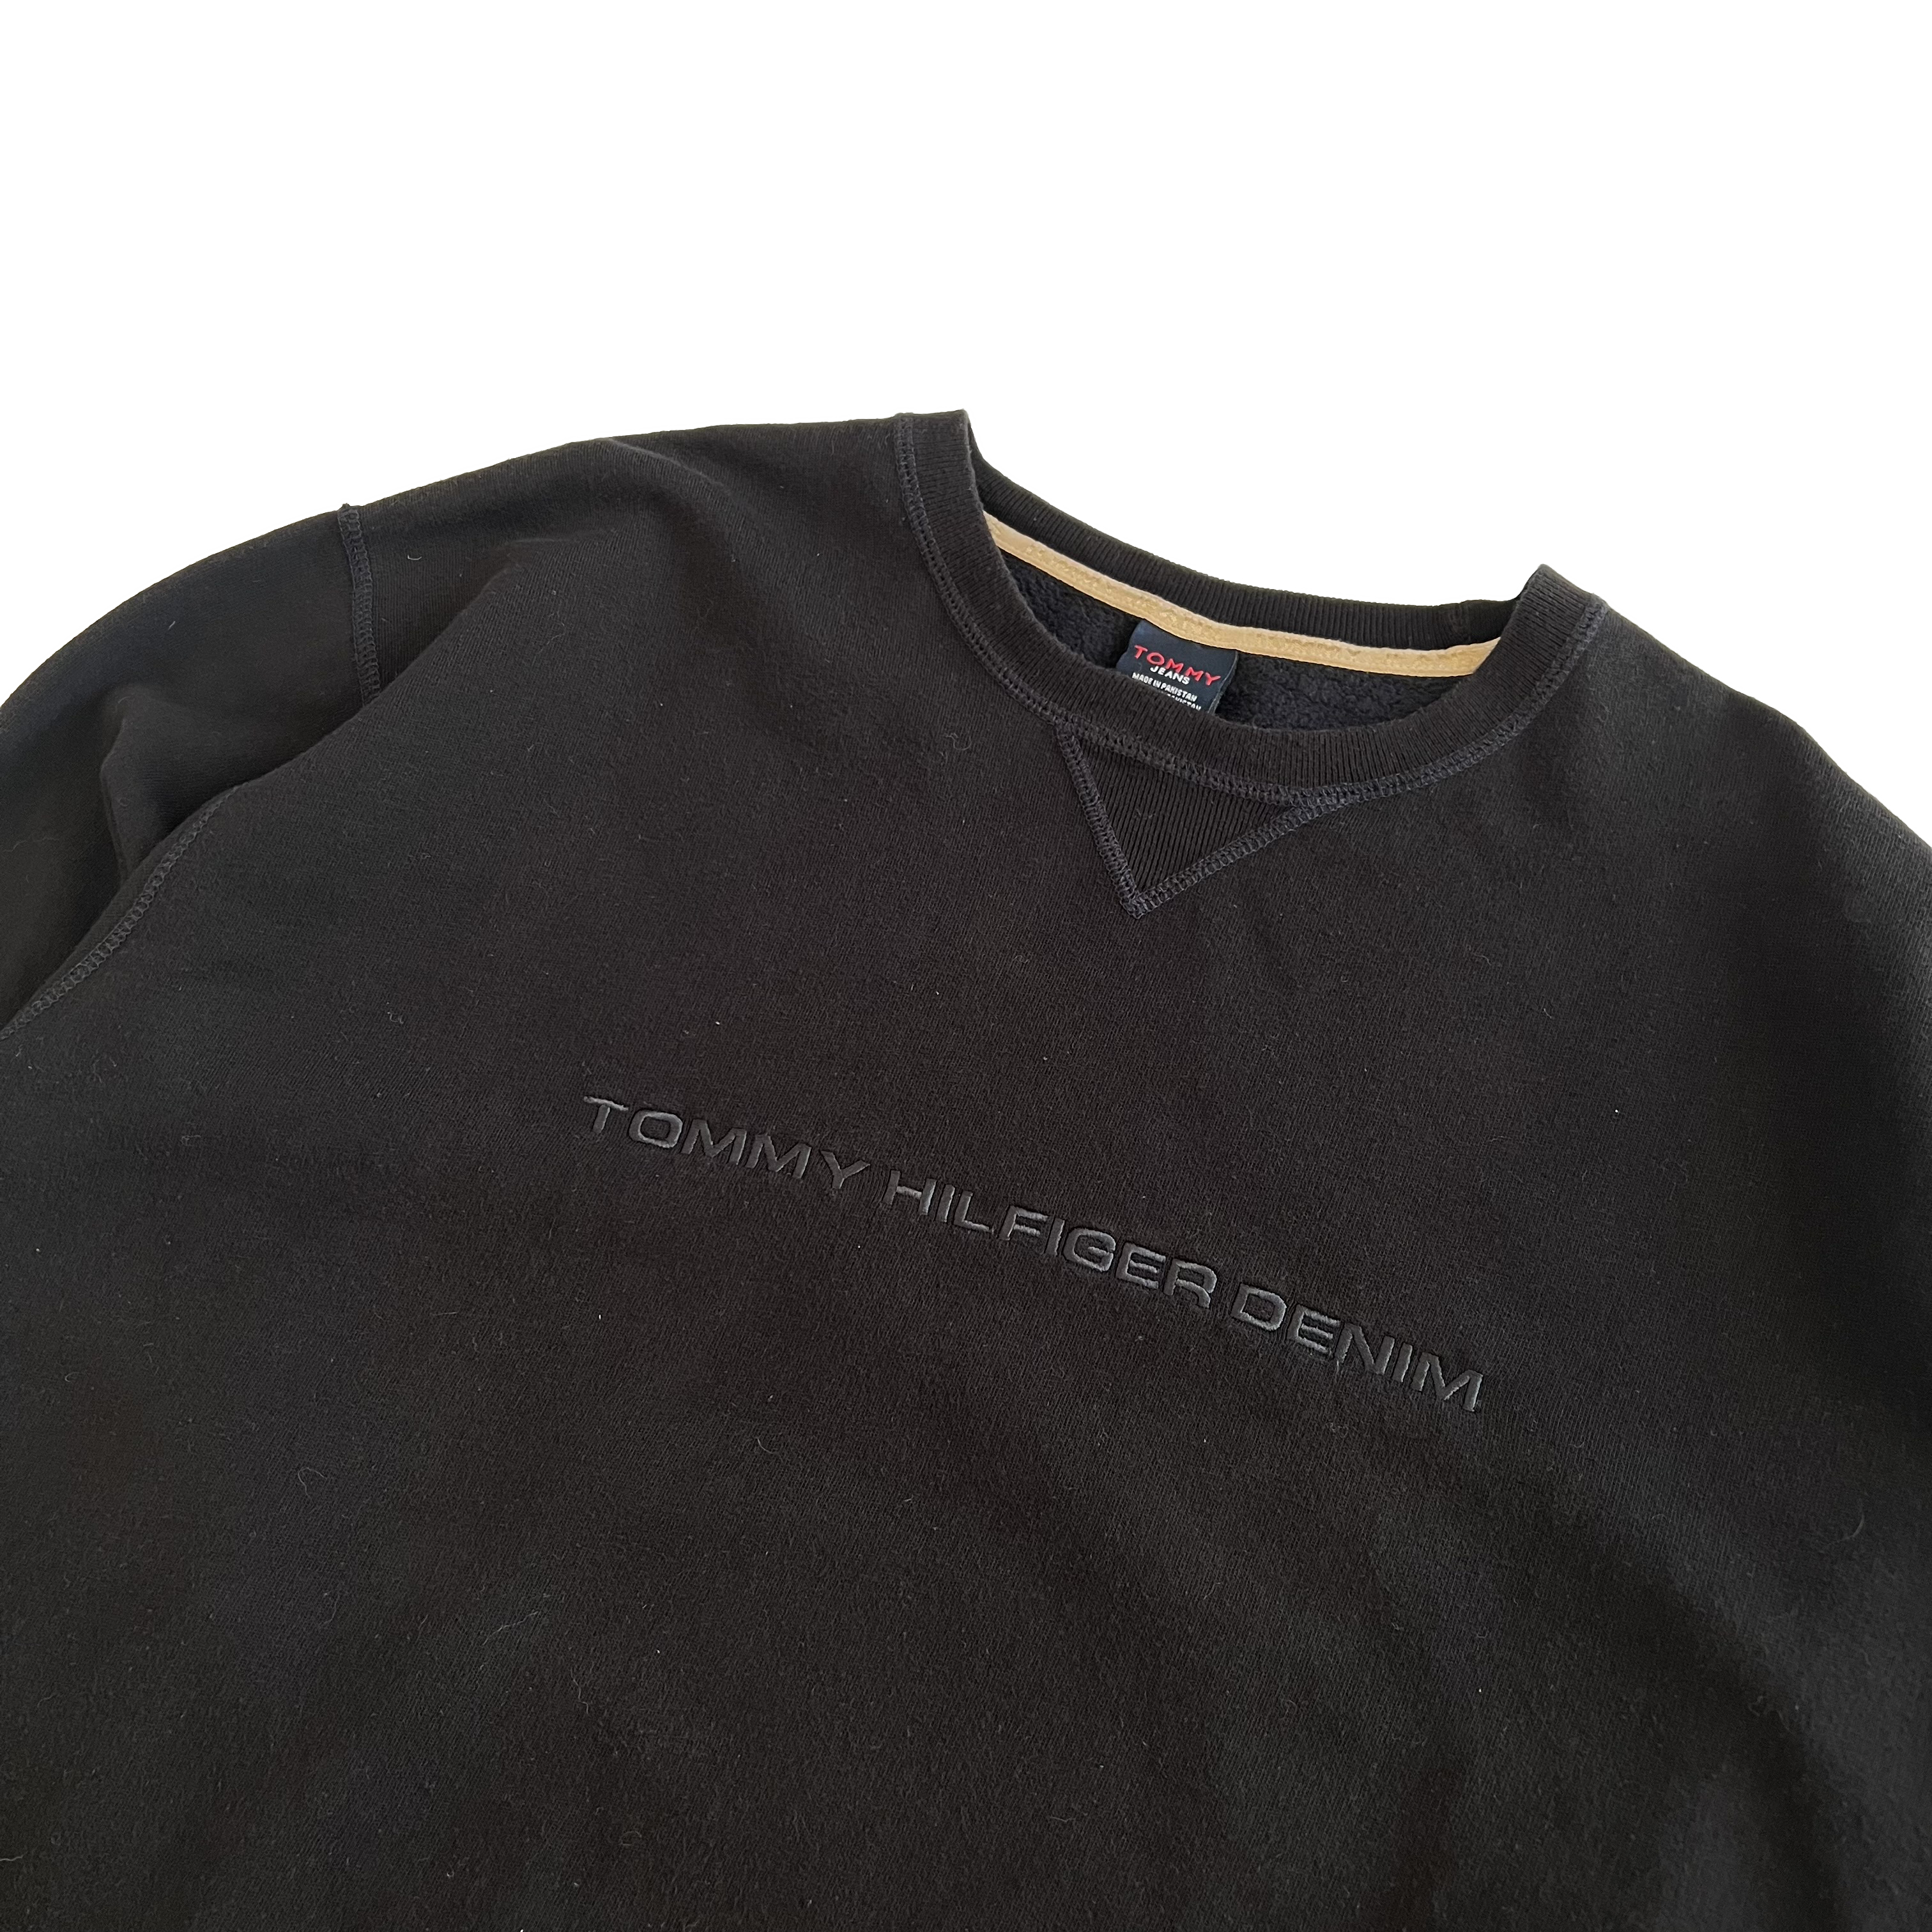 90's Tommy Hilfiger Denim sweatshirt